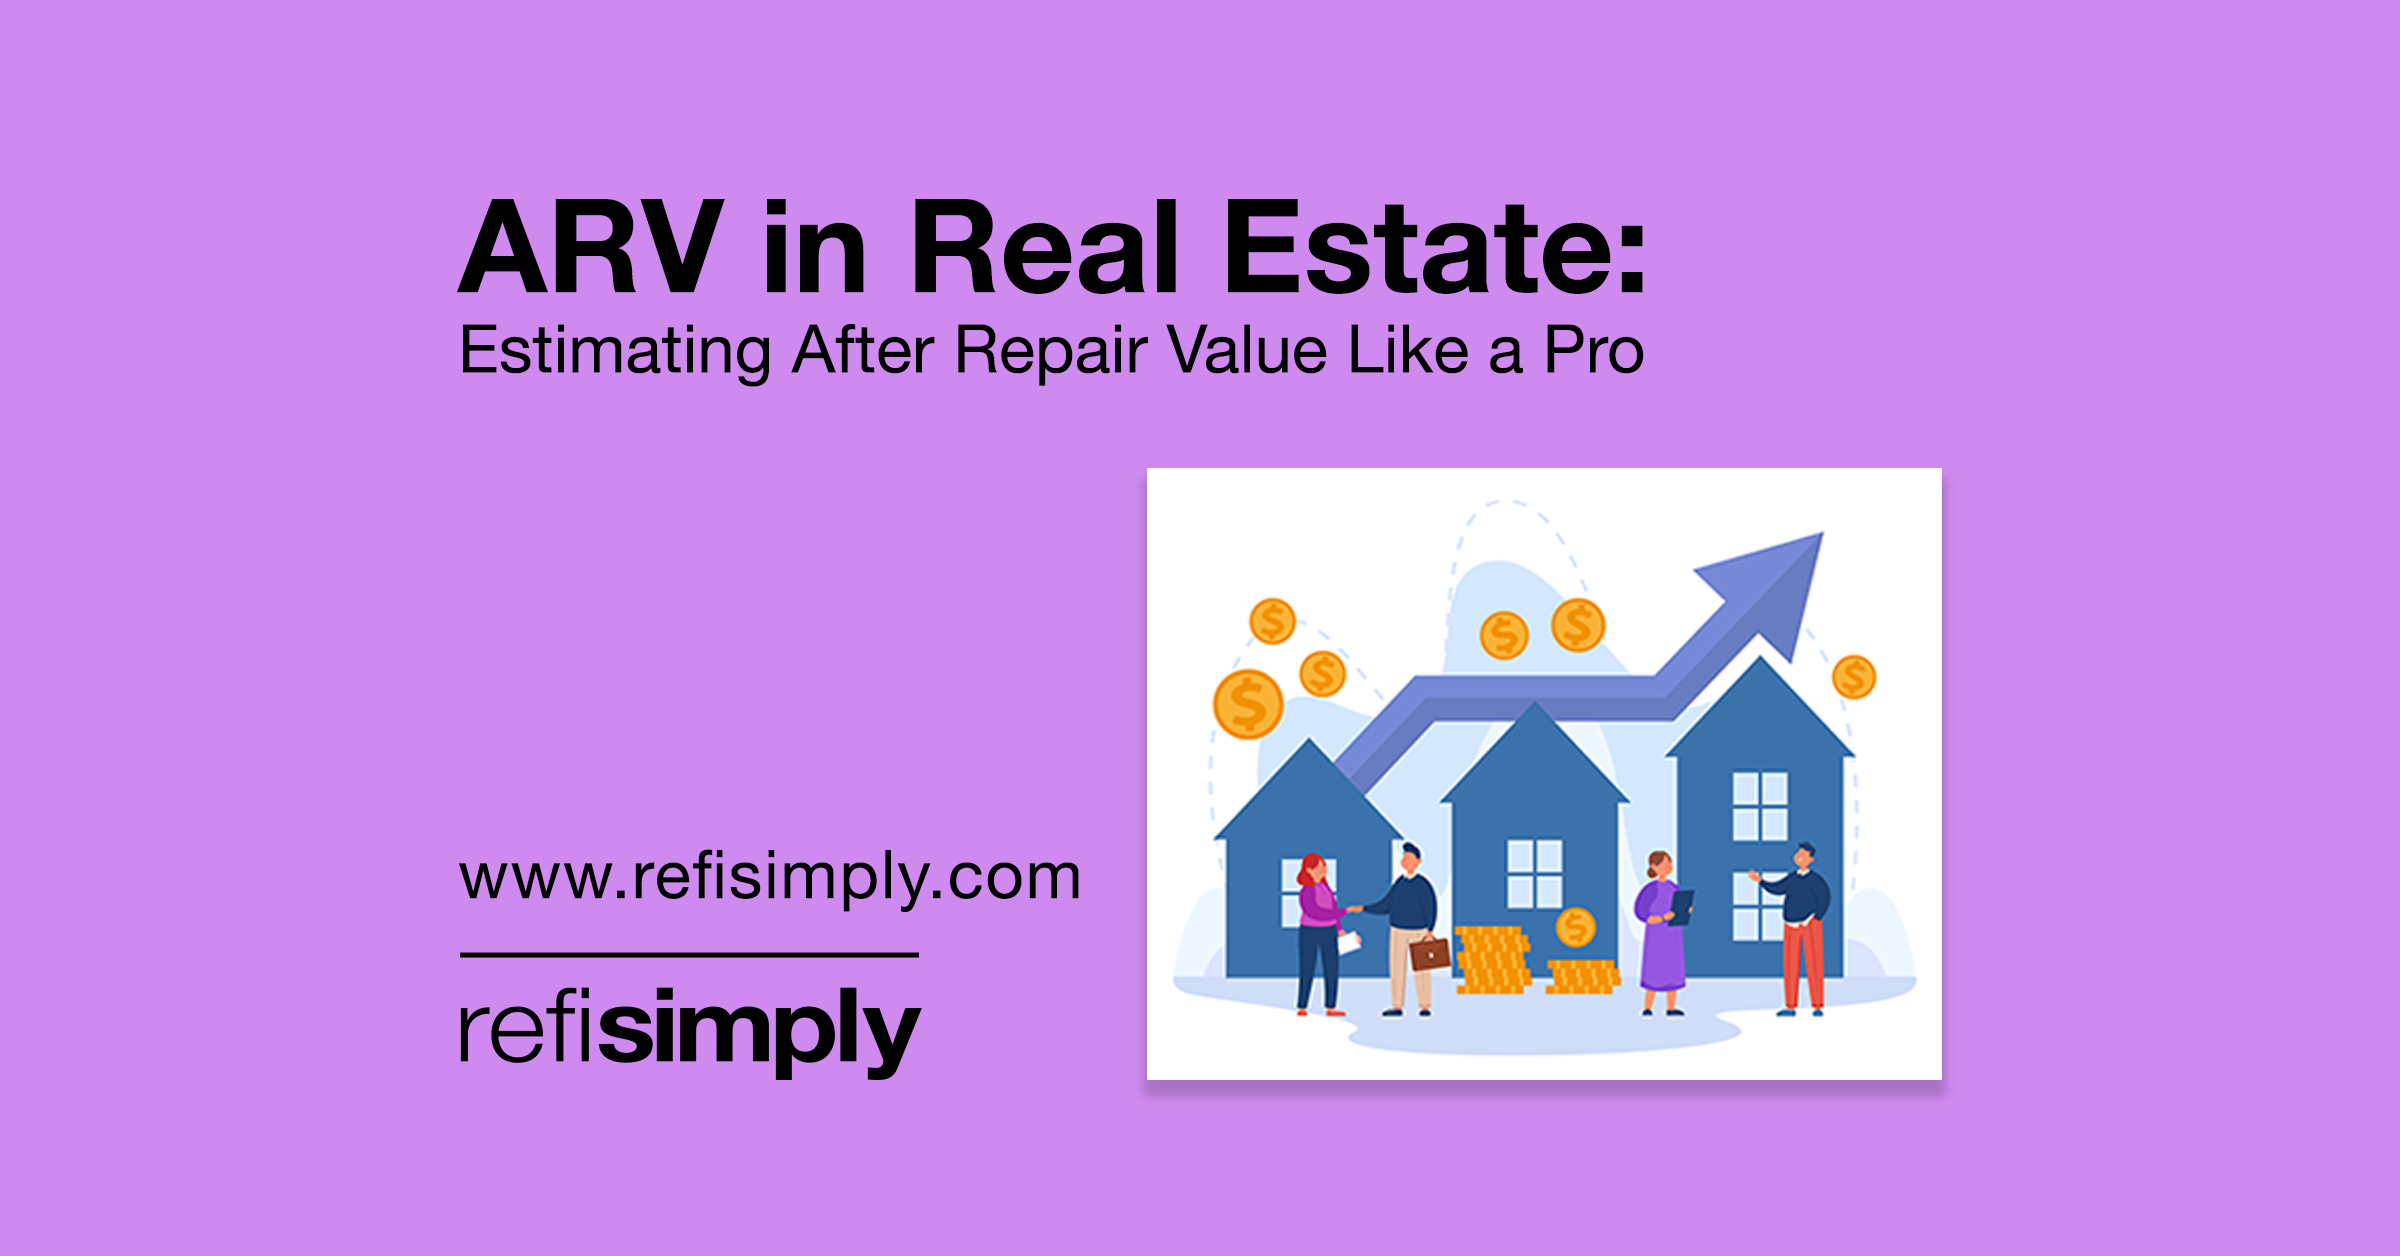 ARV in Real Estate